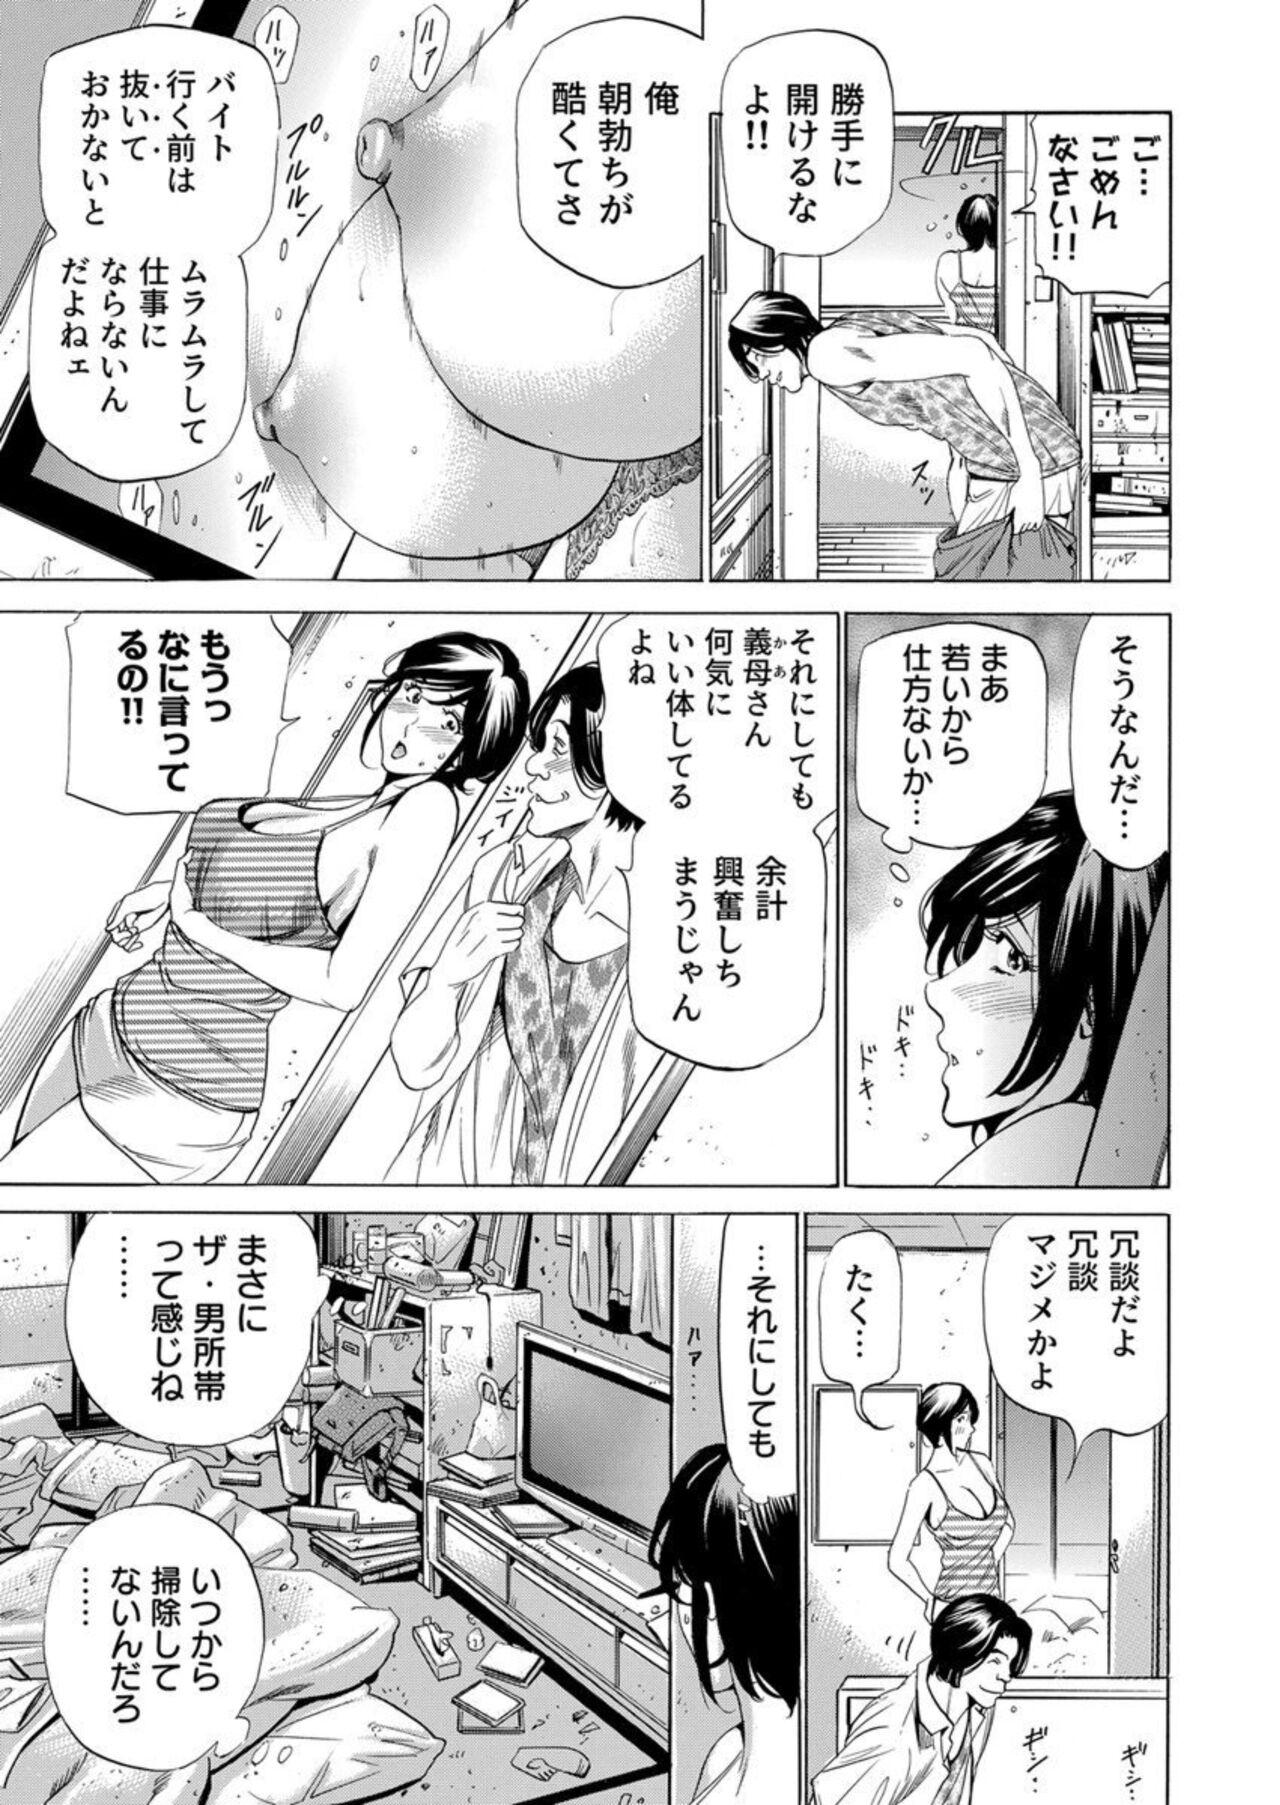 Gostosas Totsugisaki wa Tsureko ga 9 nin!? Gibo, Musukotachi to no sei Kankei ni Nayamu 2 Tongue - Page 5